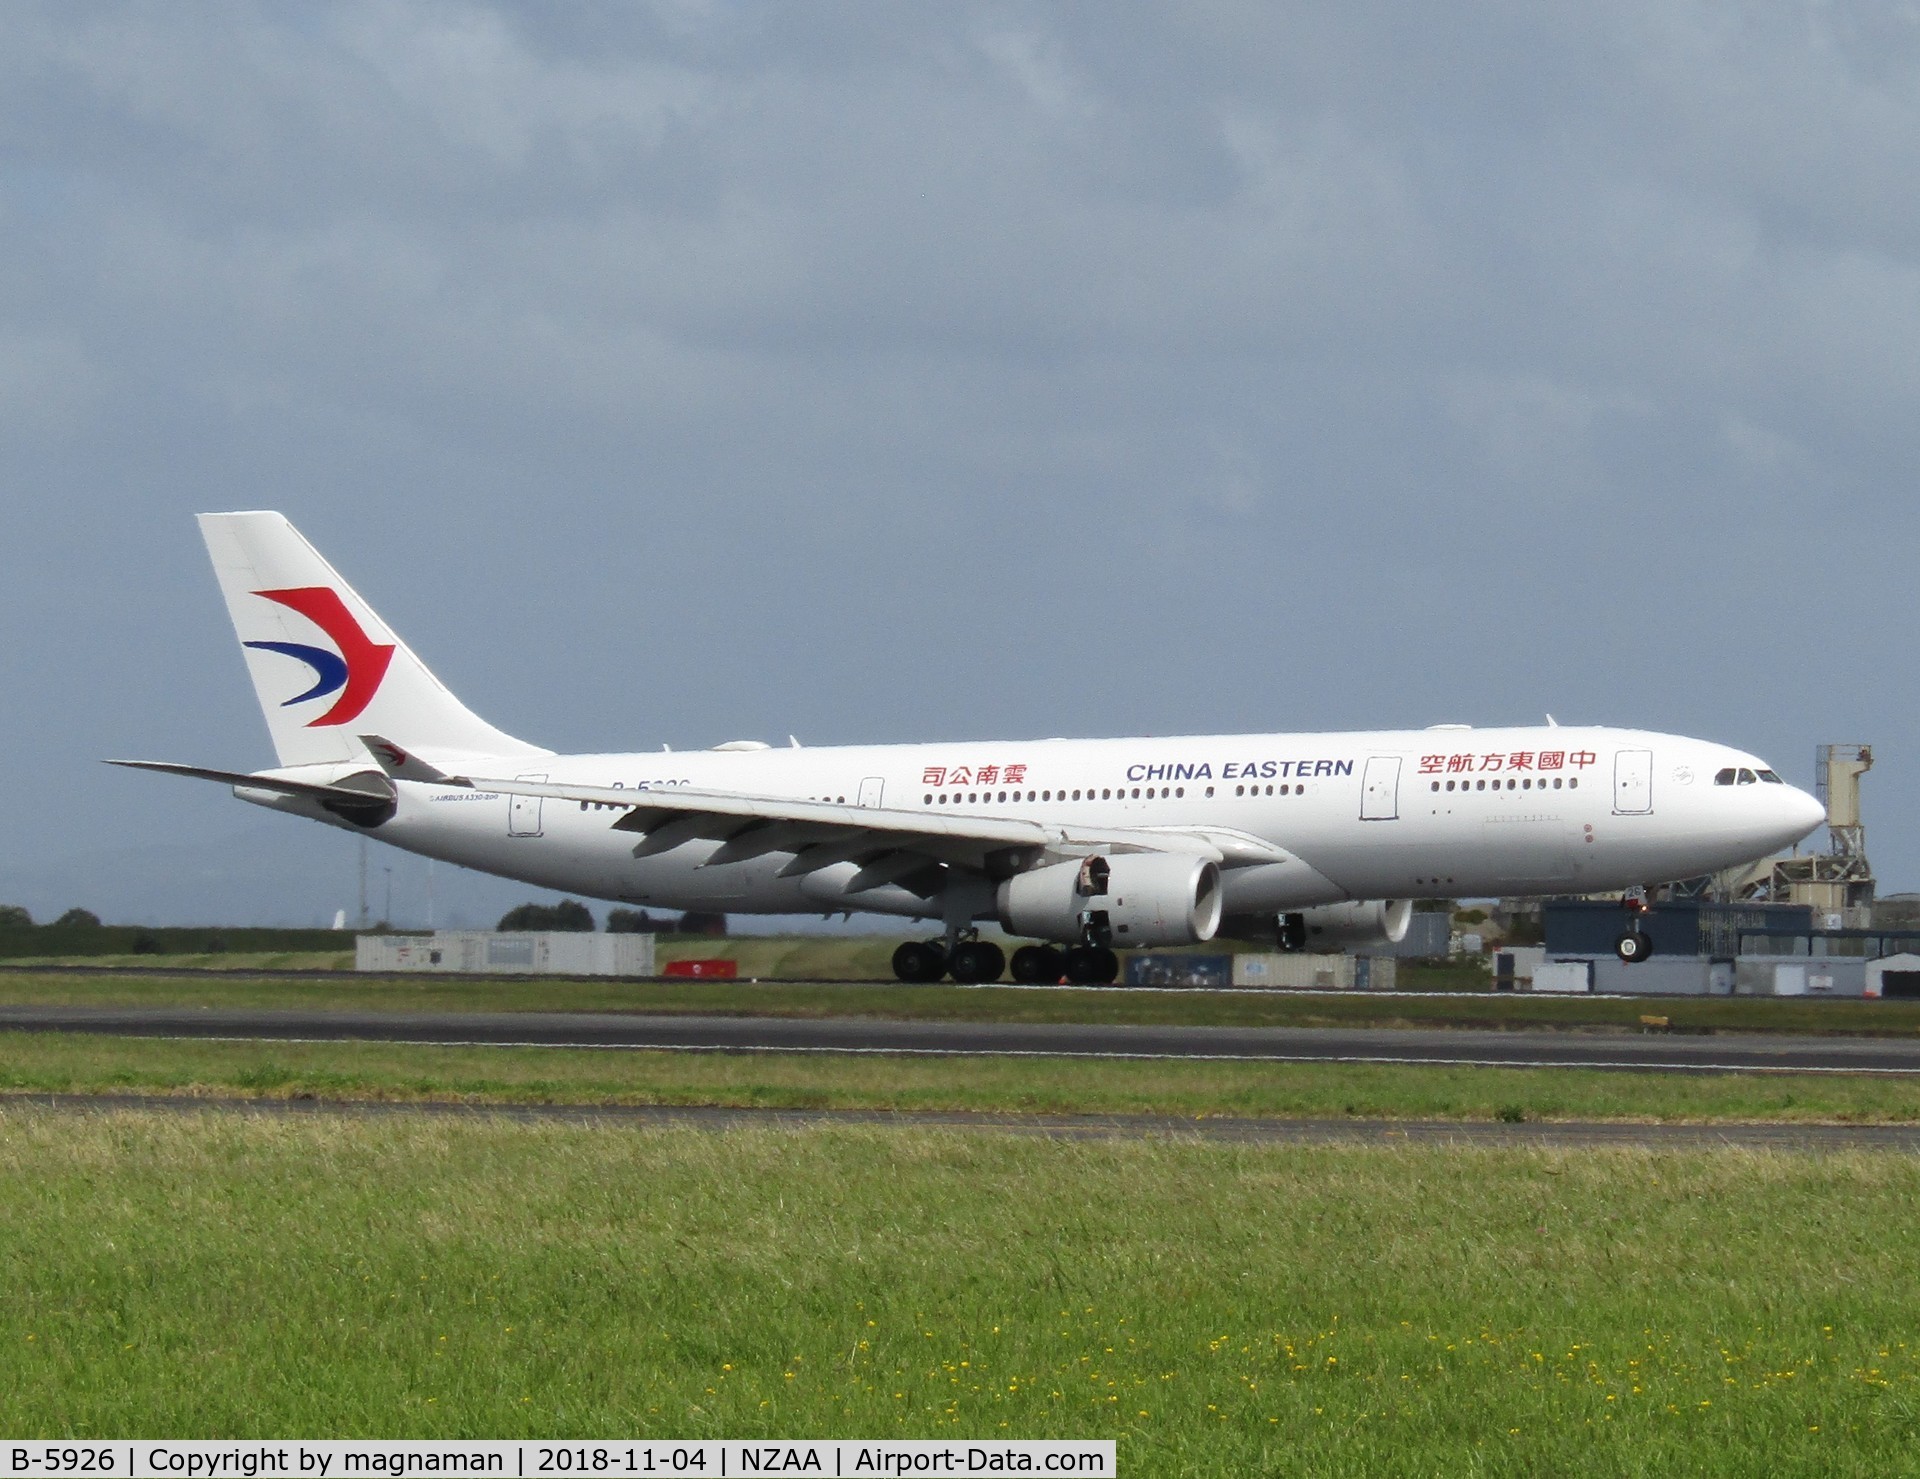 B-5926, 2013 Airbus A330-243 C/N 1421, touchdown in NZ